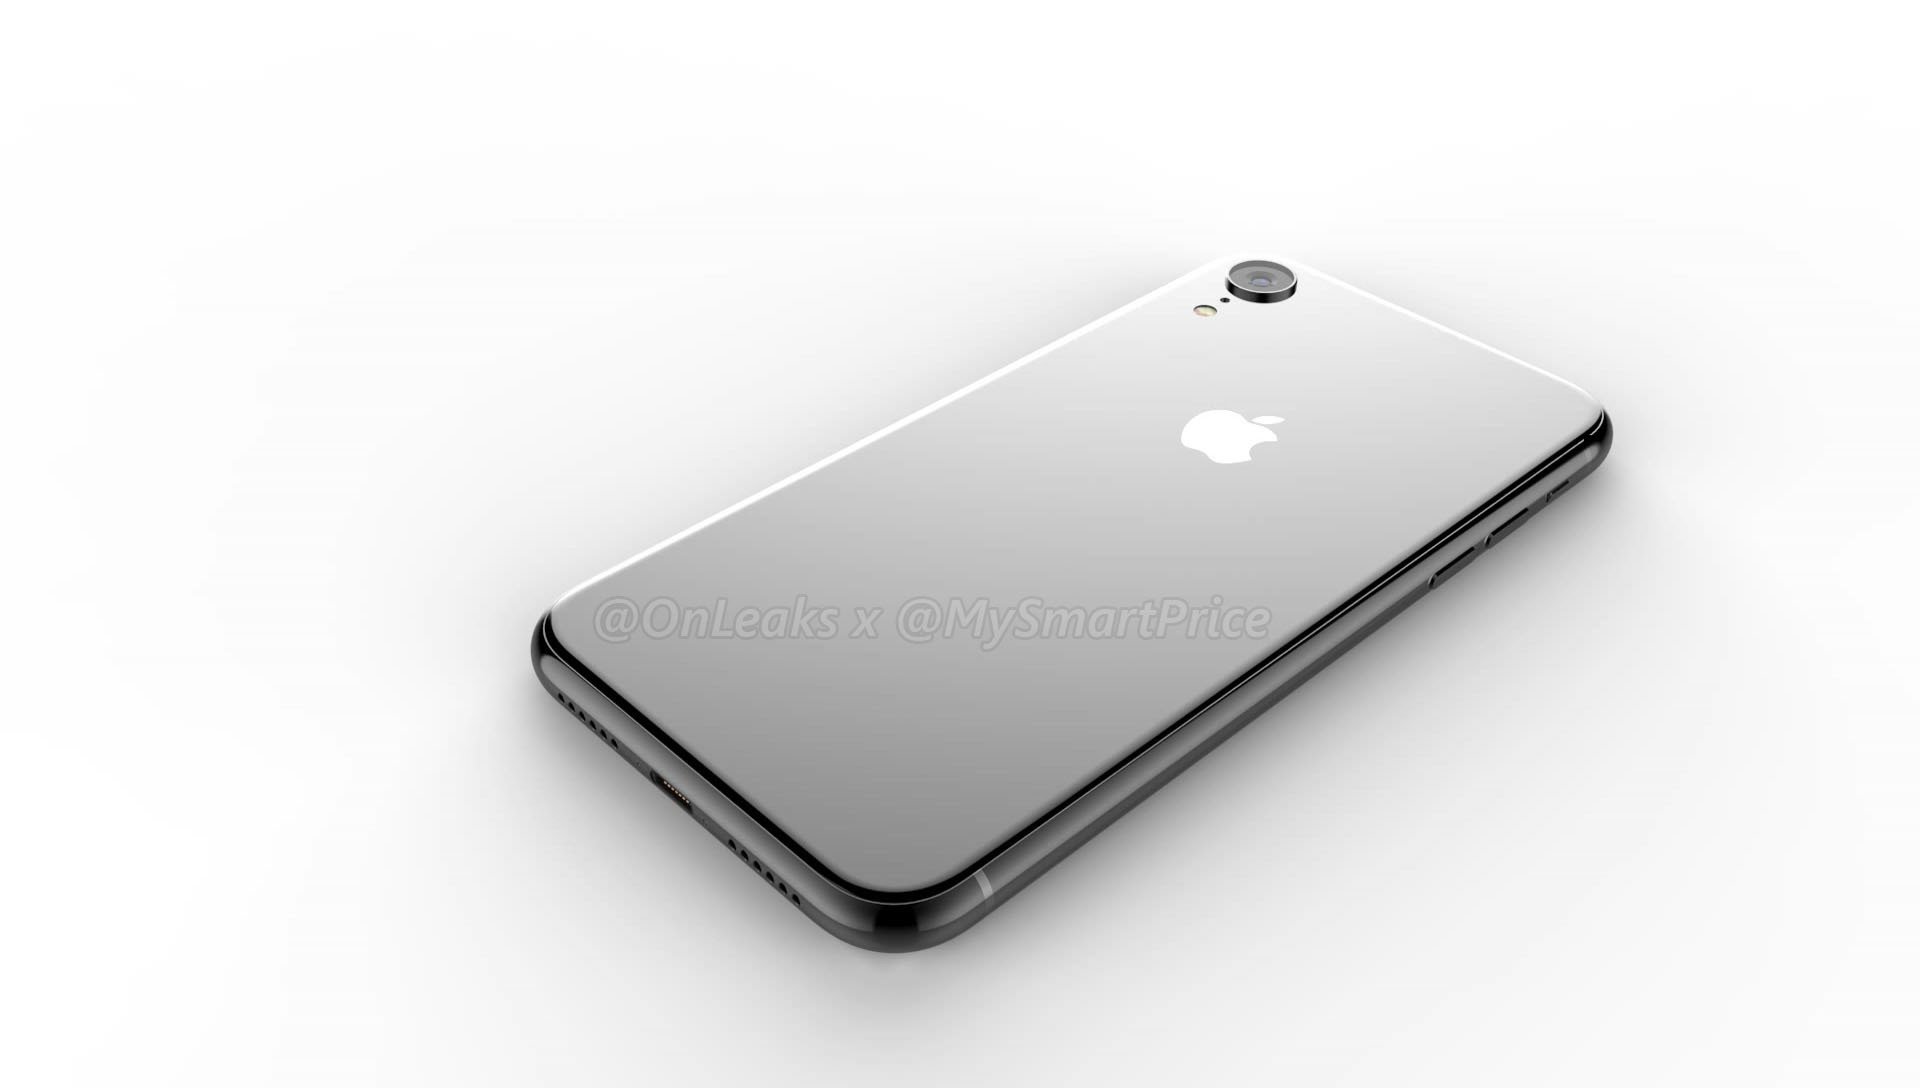 Một chiếc iPhone 9 màu trắng với vẻ ngoài thanh lịch, sáng trong sẽ làm bạn say đắm ngay từ cái nhìn đầu tiên. Với thiết kế sang trọng và màu sắc tuyệt đẹp, chiếc iPhone 9 này đang chờ đón bạn. Hãy xem ngay hình ảnh iPhone 9 phiên bản màu trắng để cảm nhận sự tuyệt vời này.